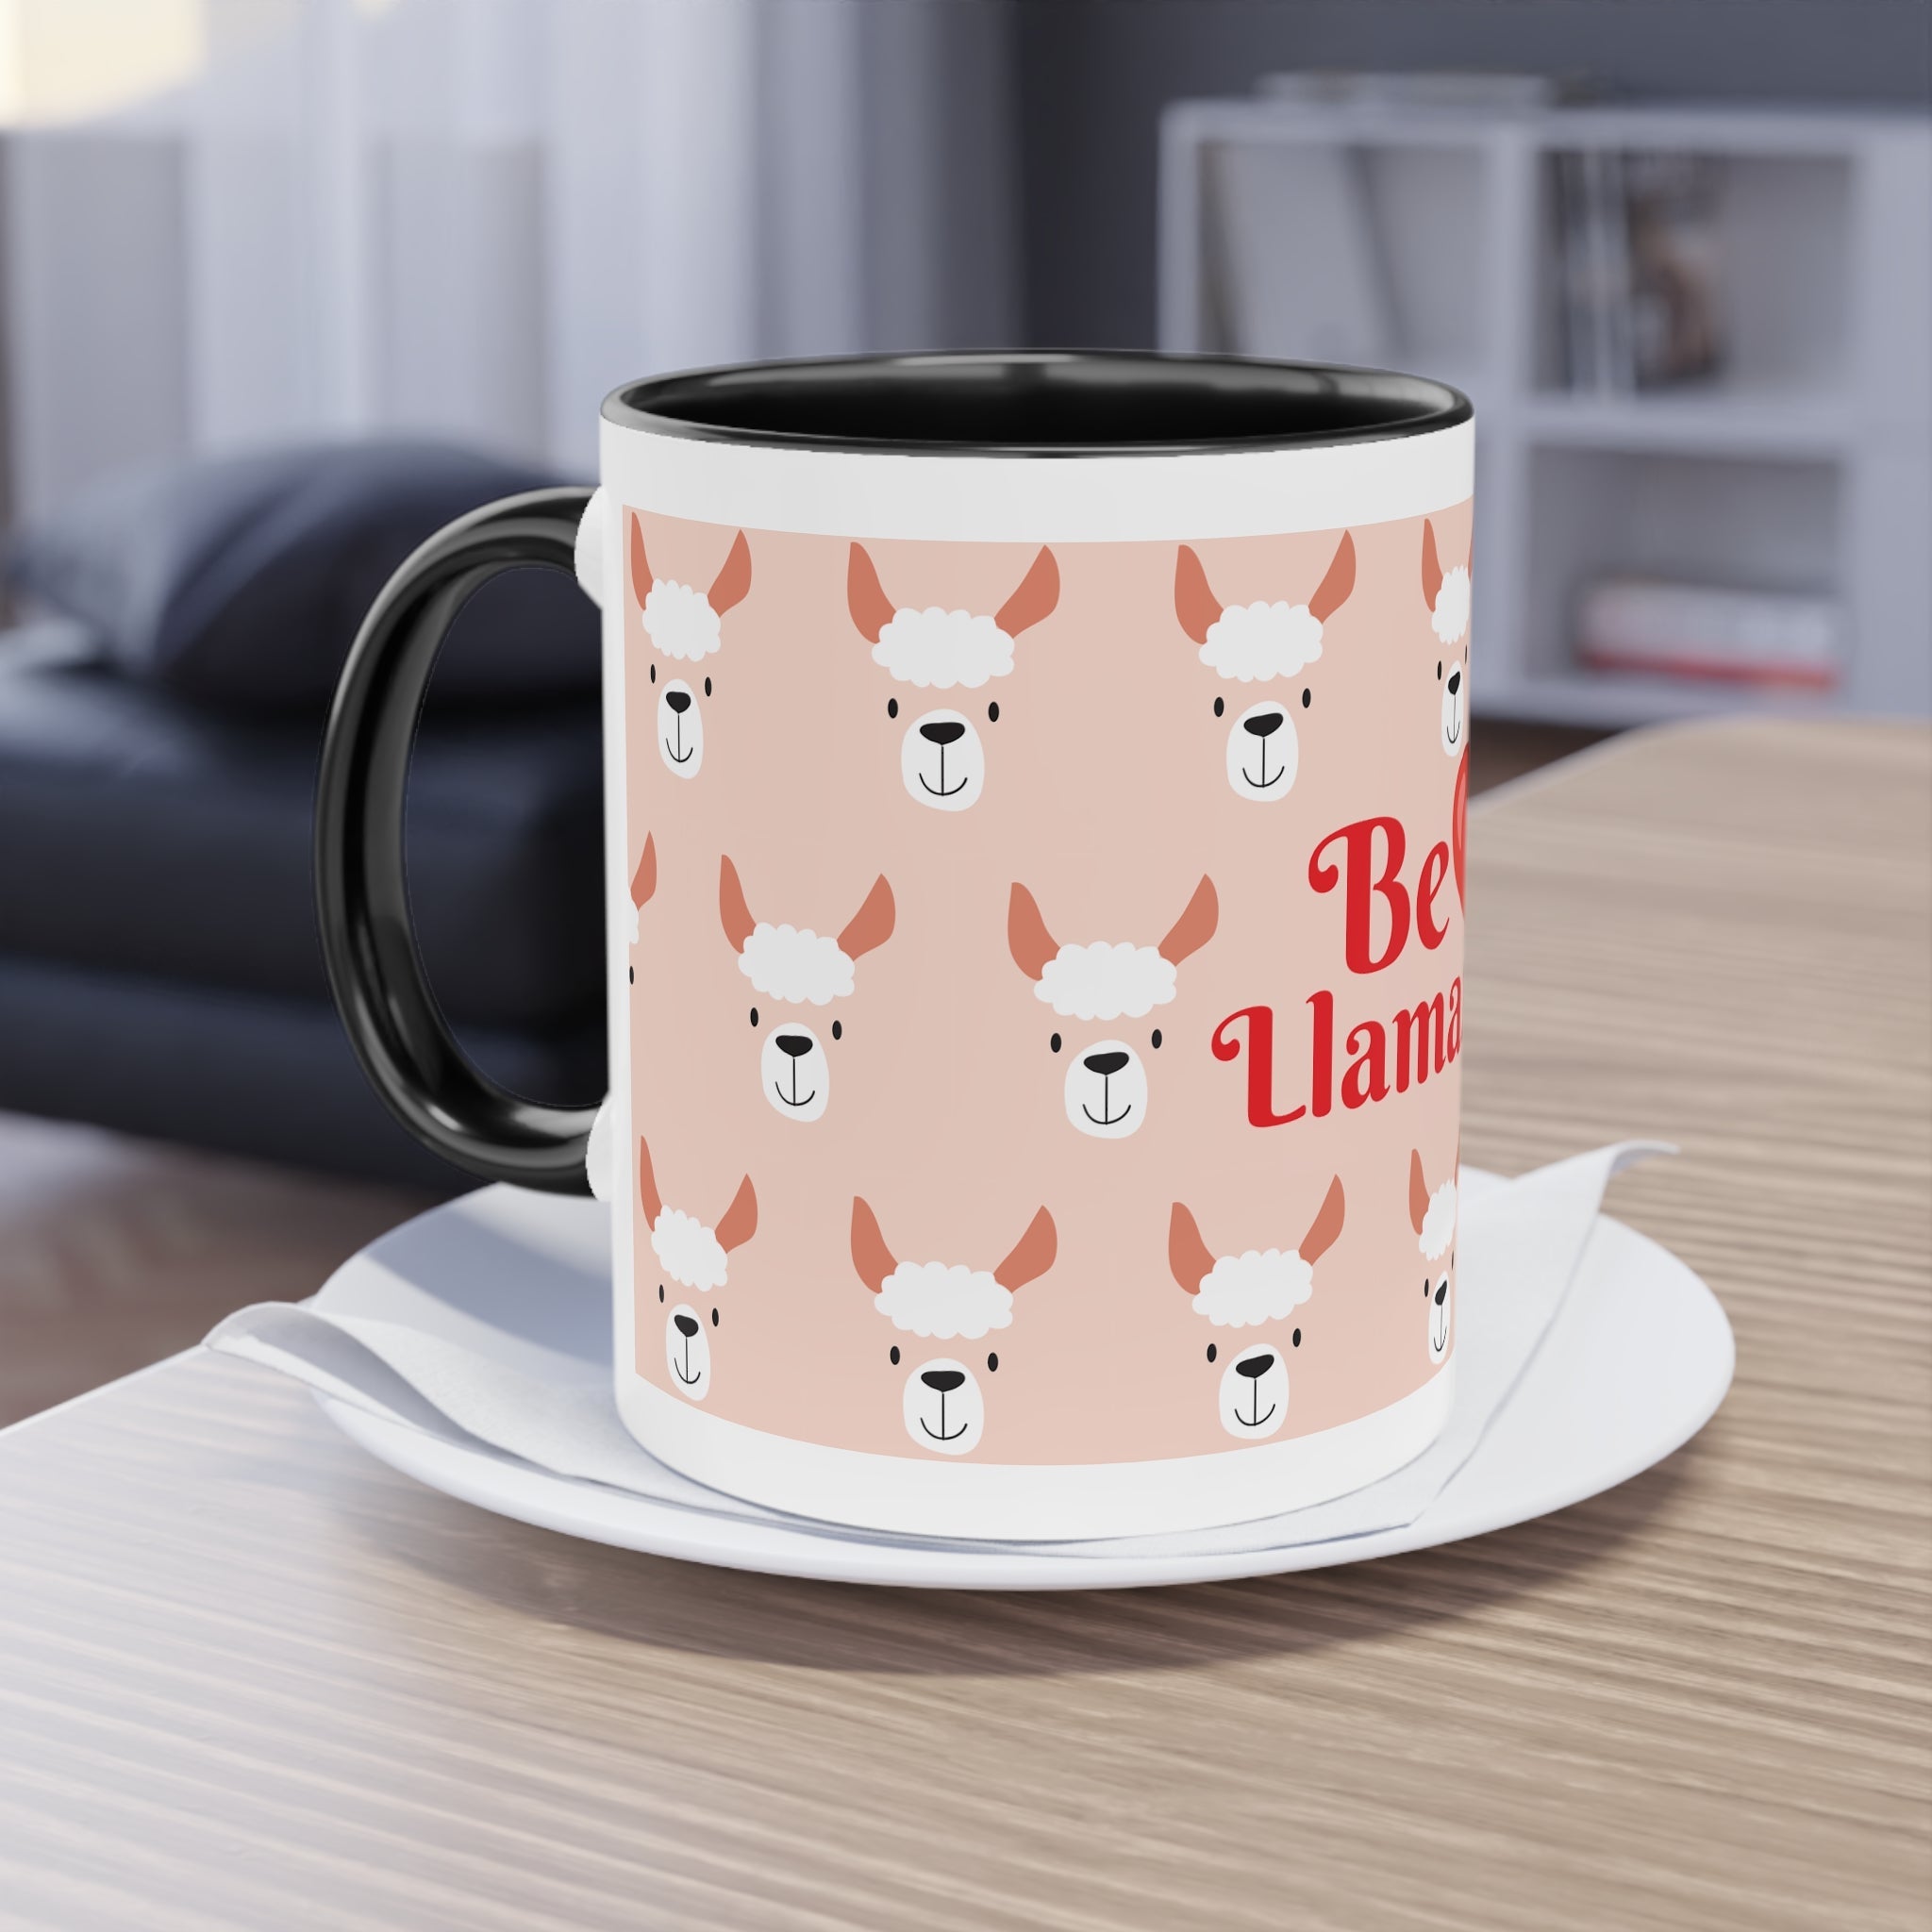 Two-Tone Coffee Mug, 11oz-19